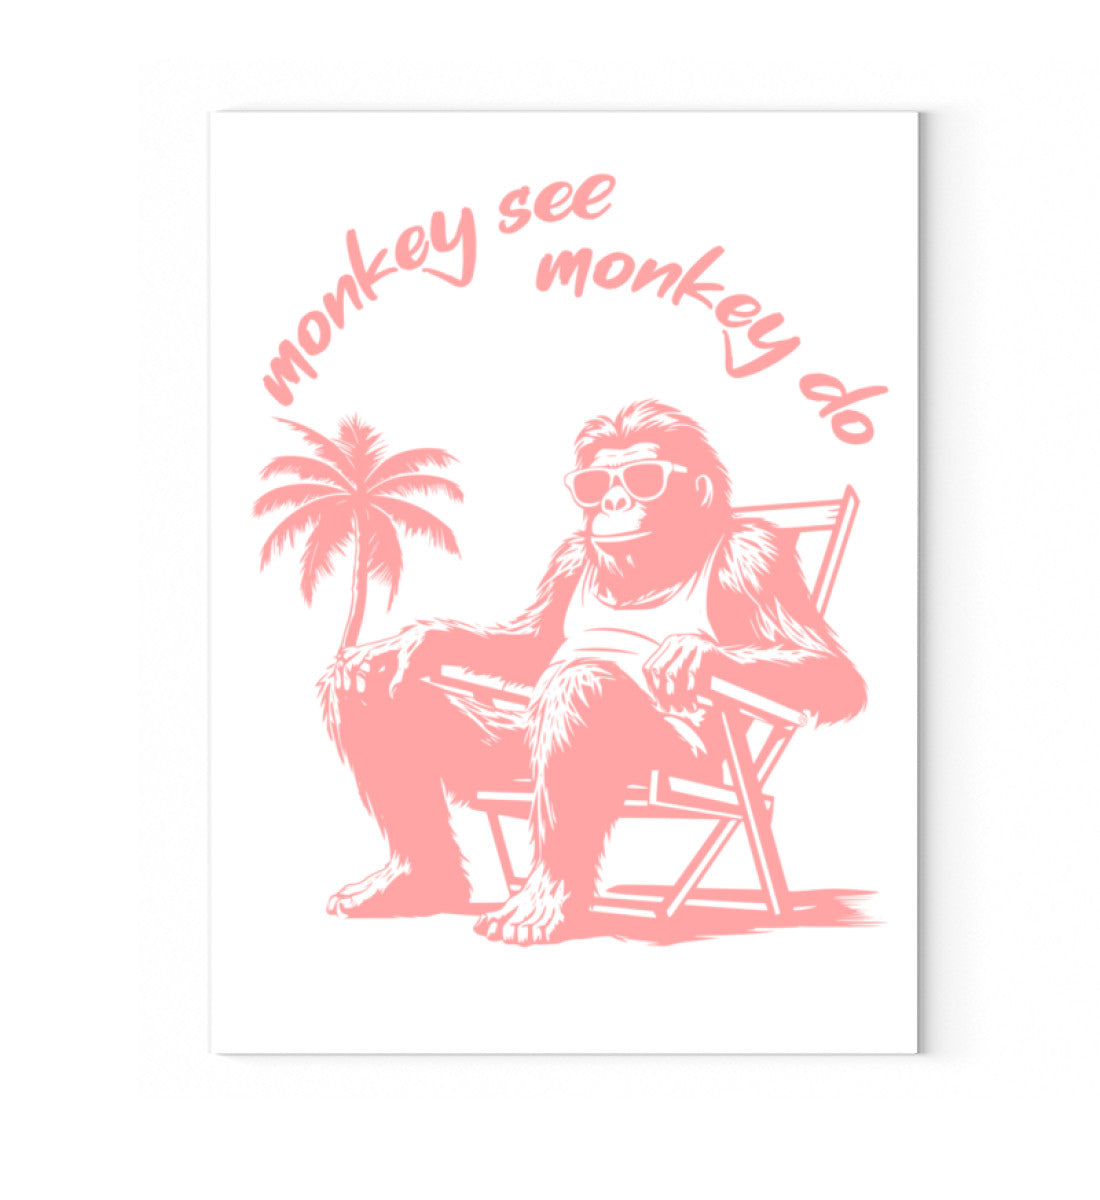 Leinwandbild auf Holzkeilrahmen aufgezogen mit Druck Design der Roger Rockawoo Kollektion monkey see monkey do